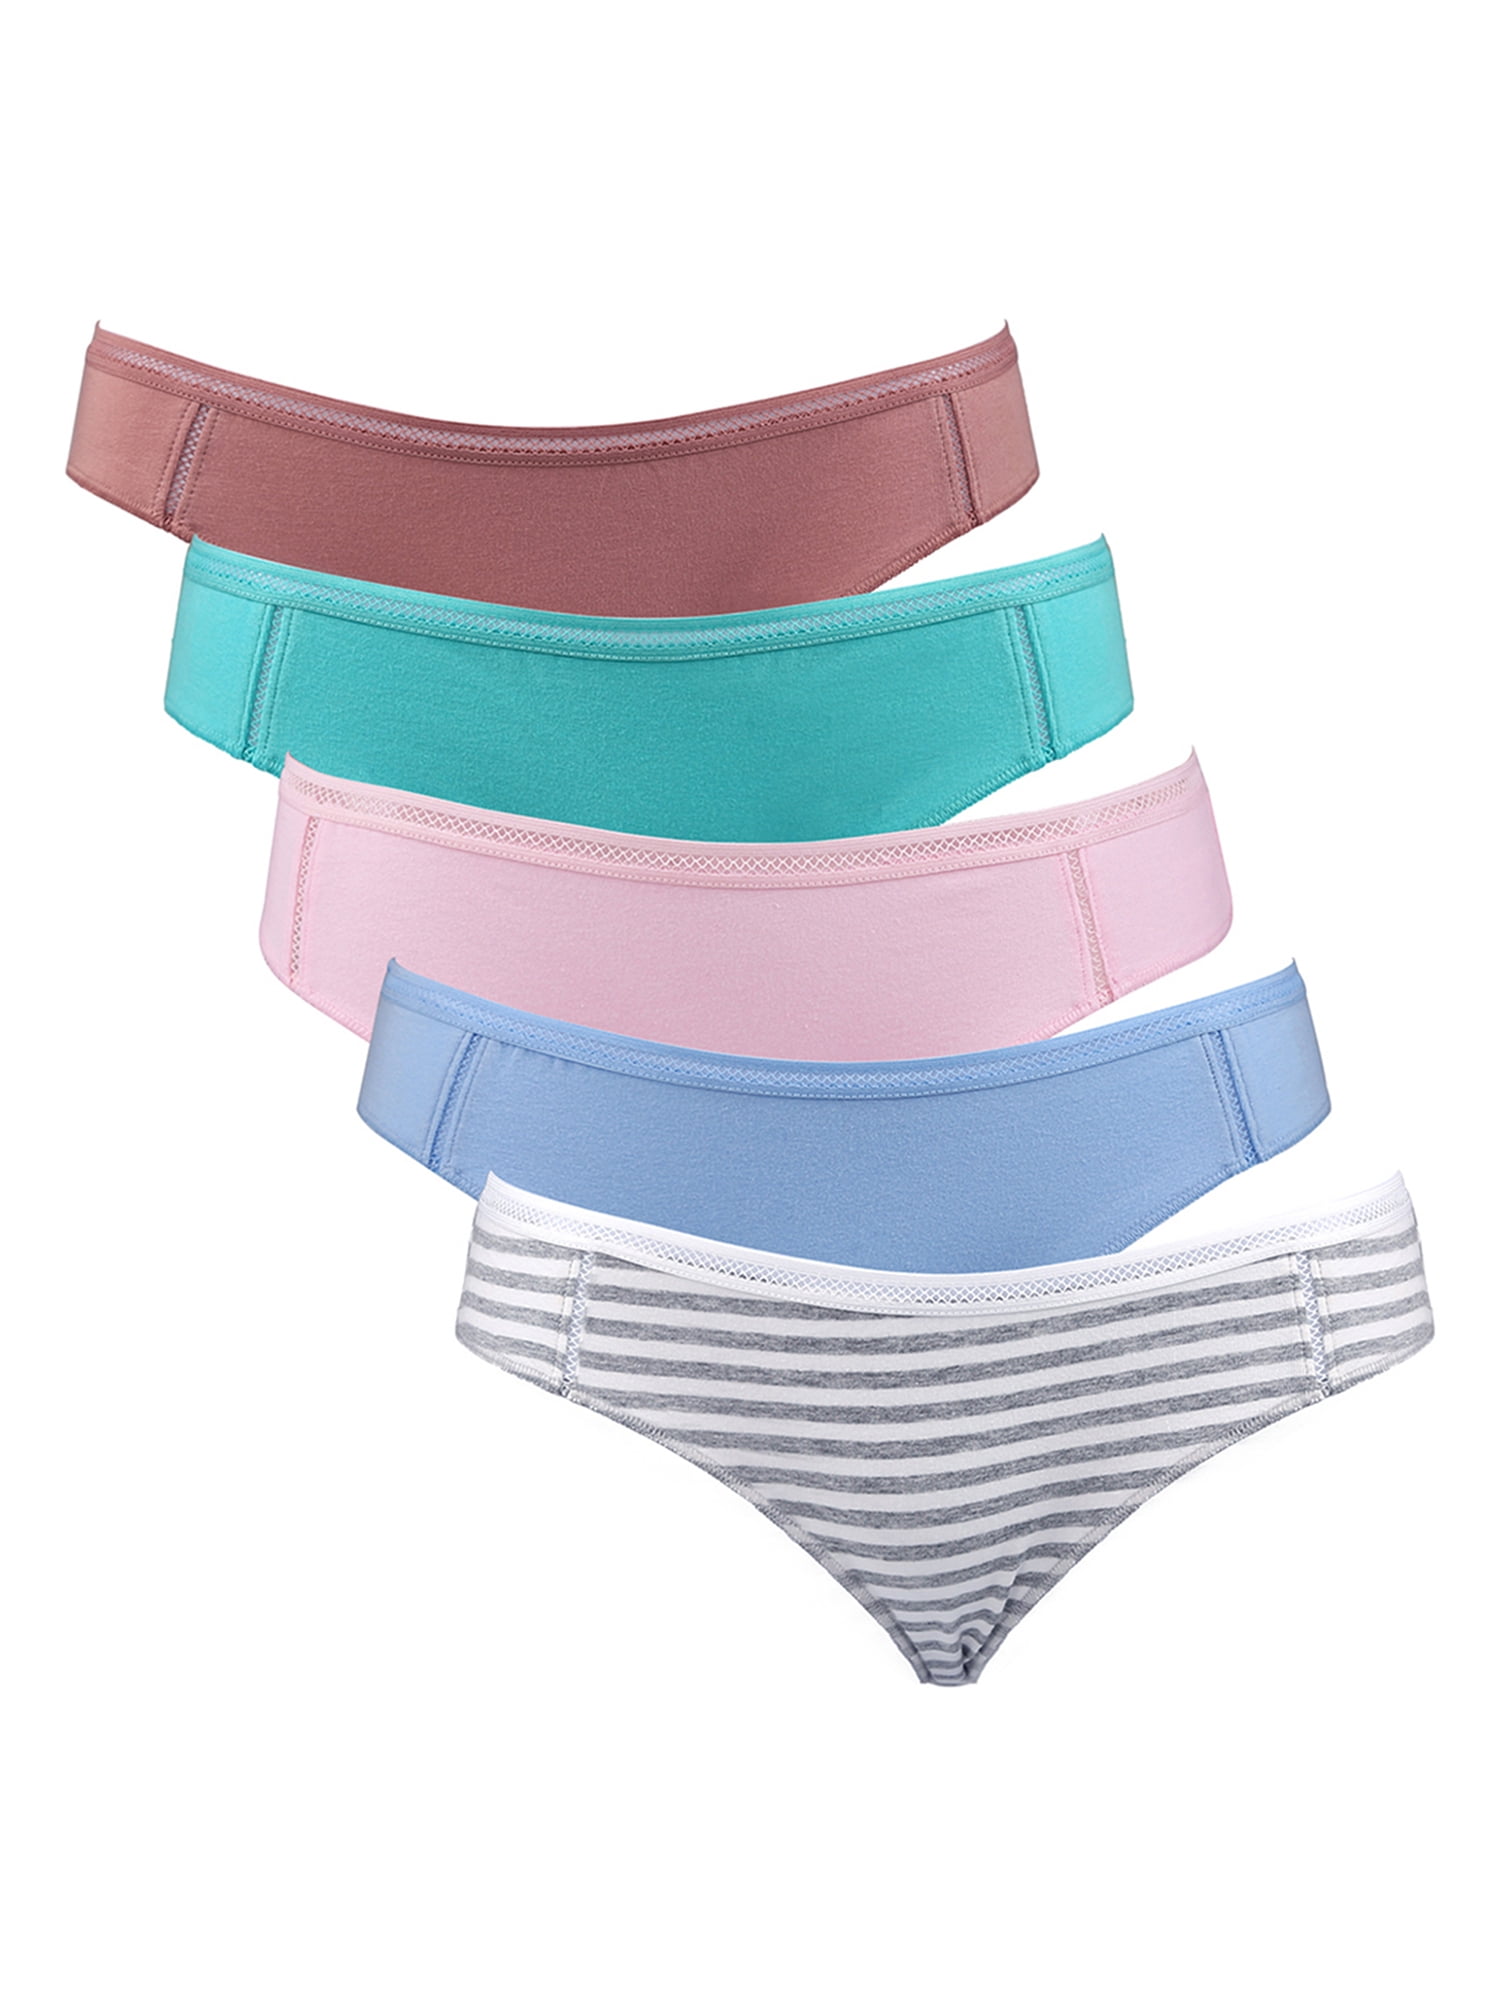 Buy ANESHA Women's Cotton Underwear High Waist Stretch Briefs Soft